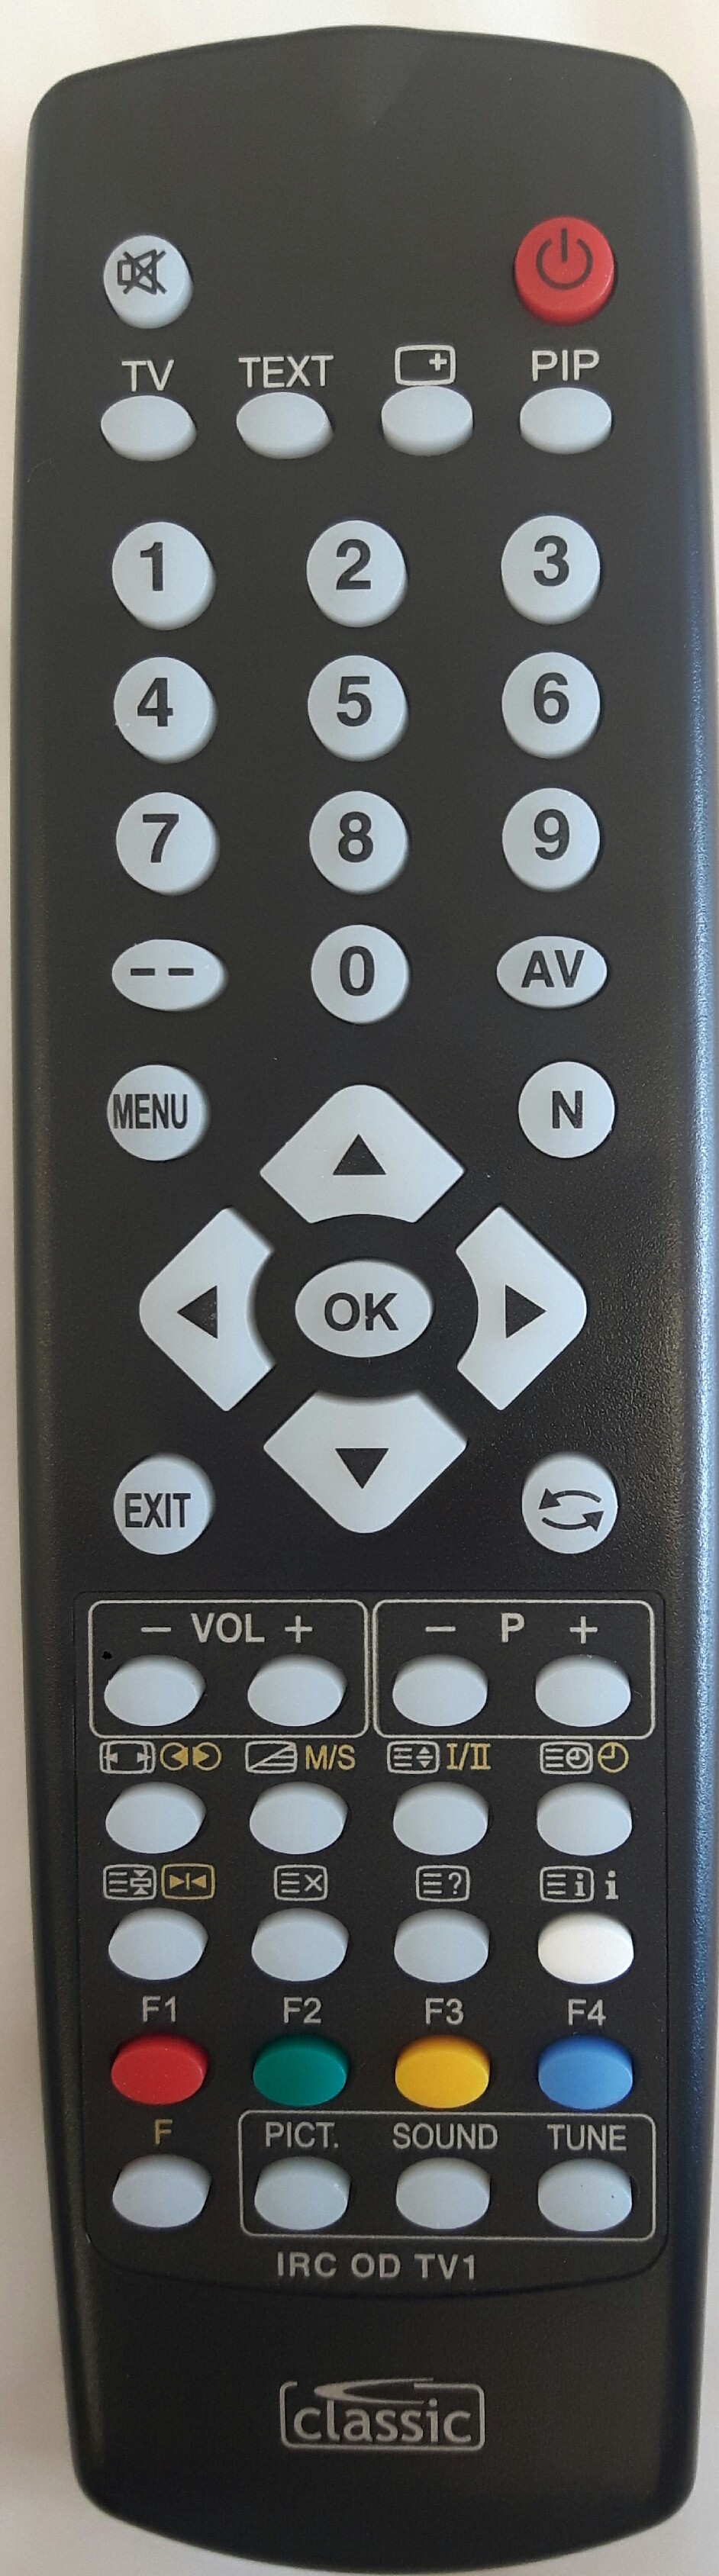 ORION T 2917 MTX-S Remote Control